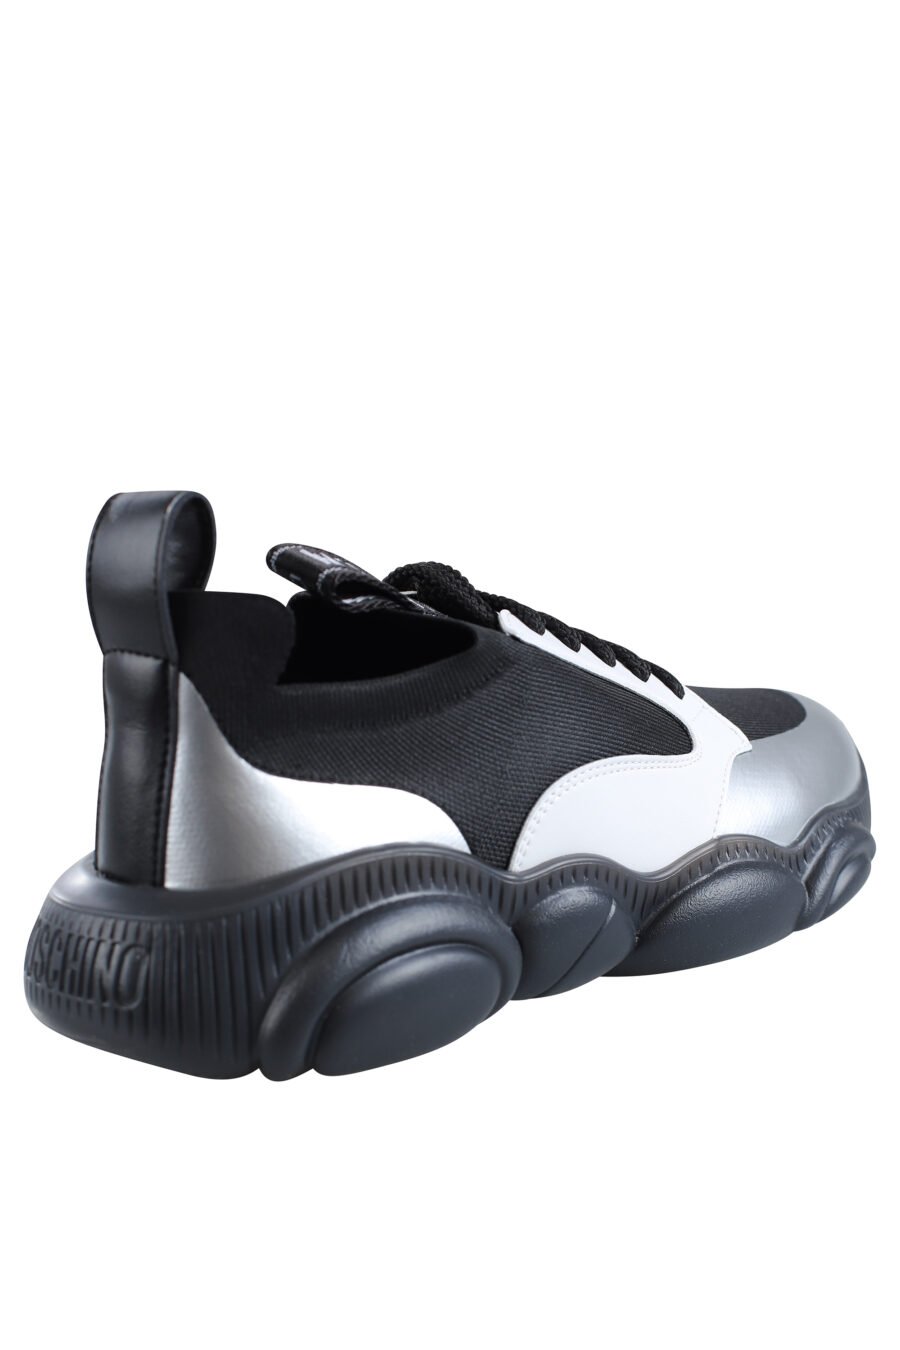 Zapatillas negras con blanco y plateado "orso35" - IMG 1999 1